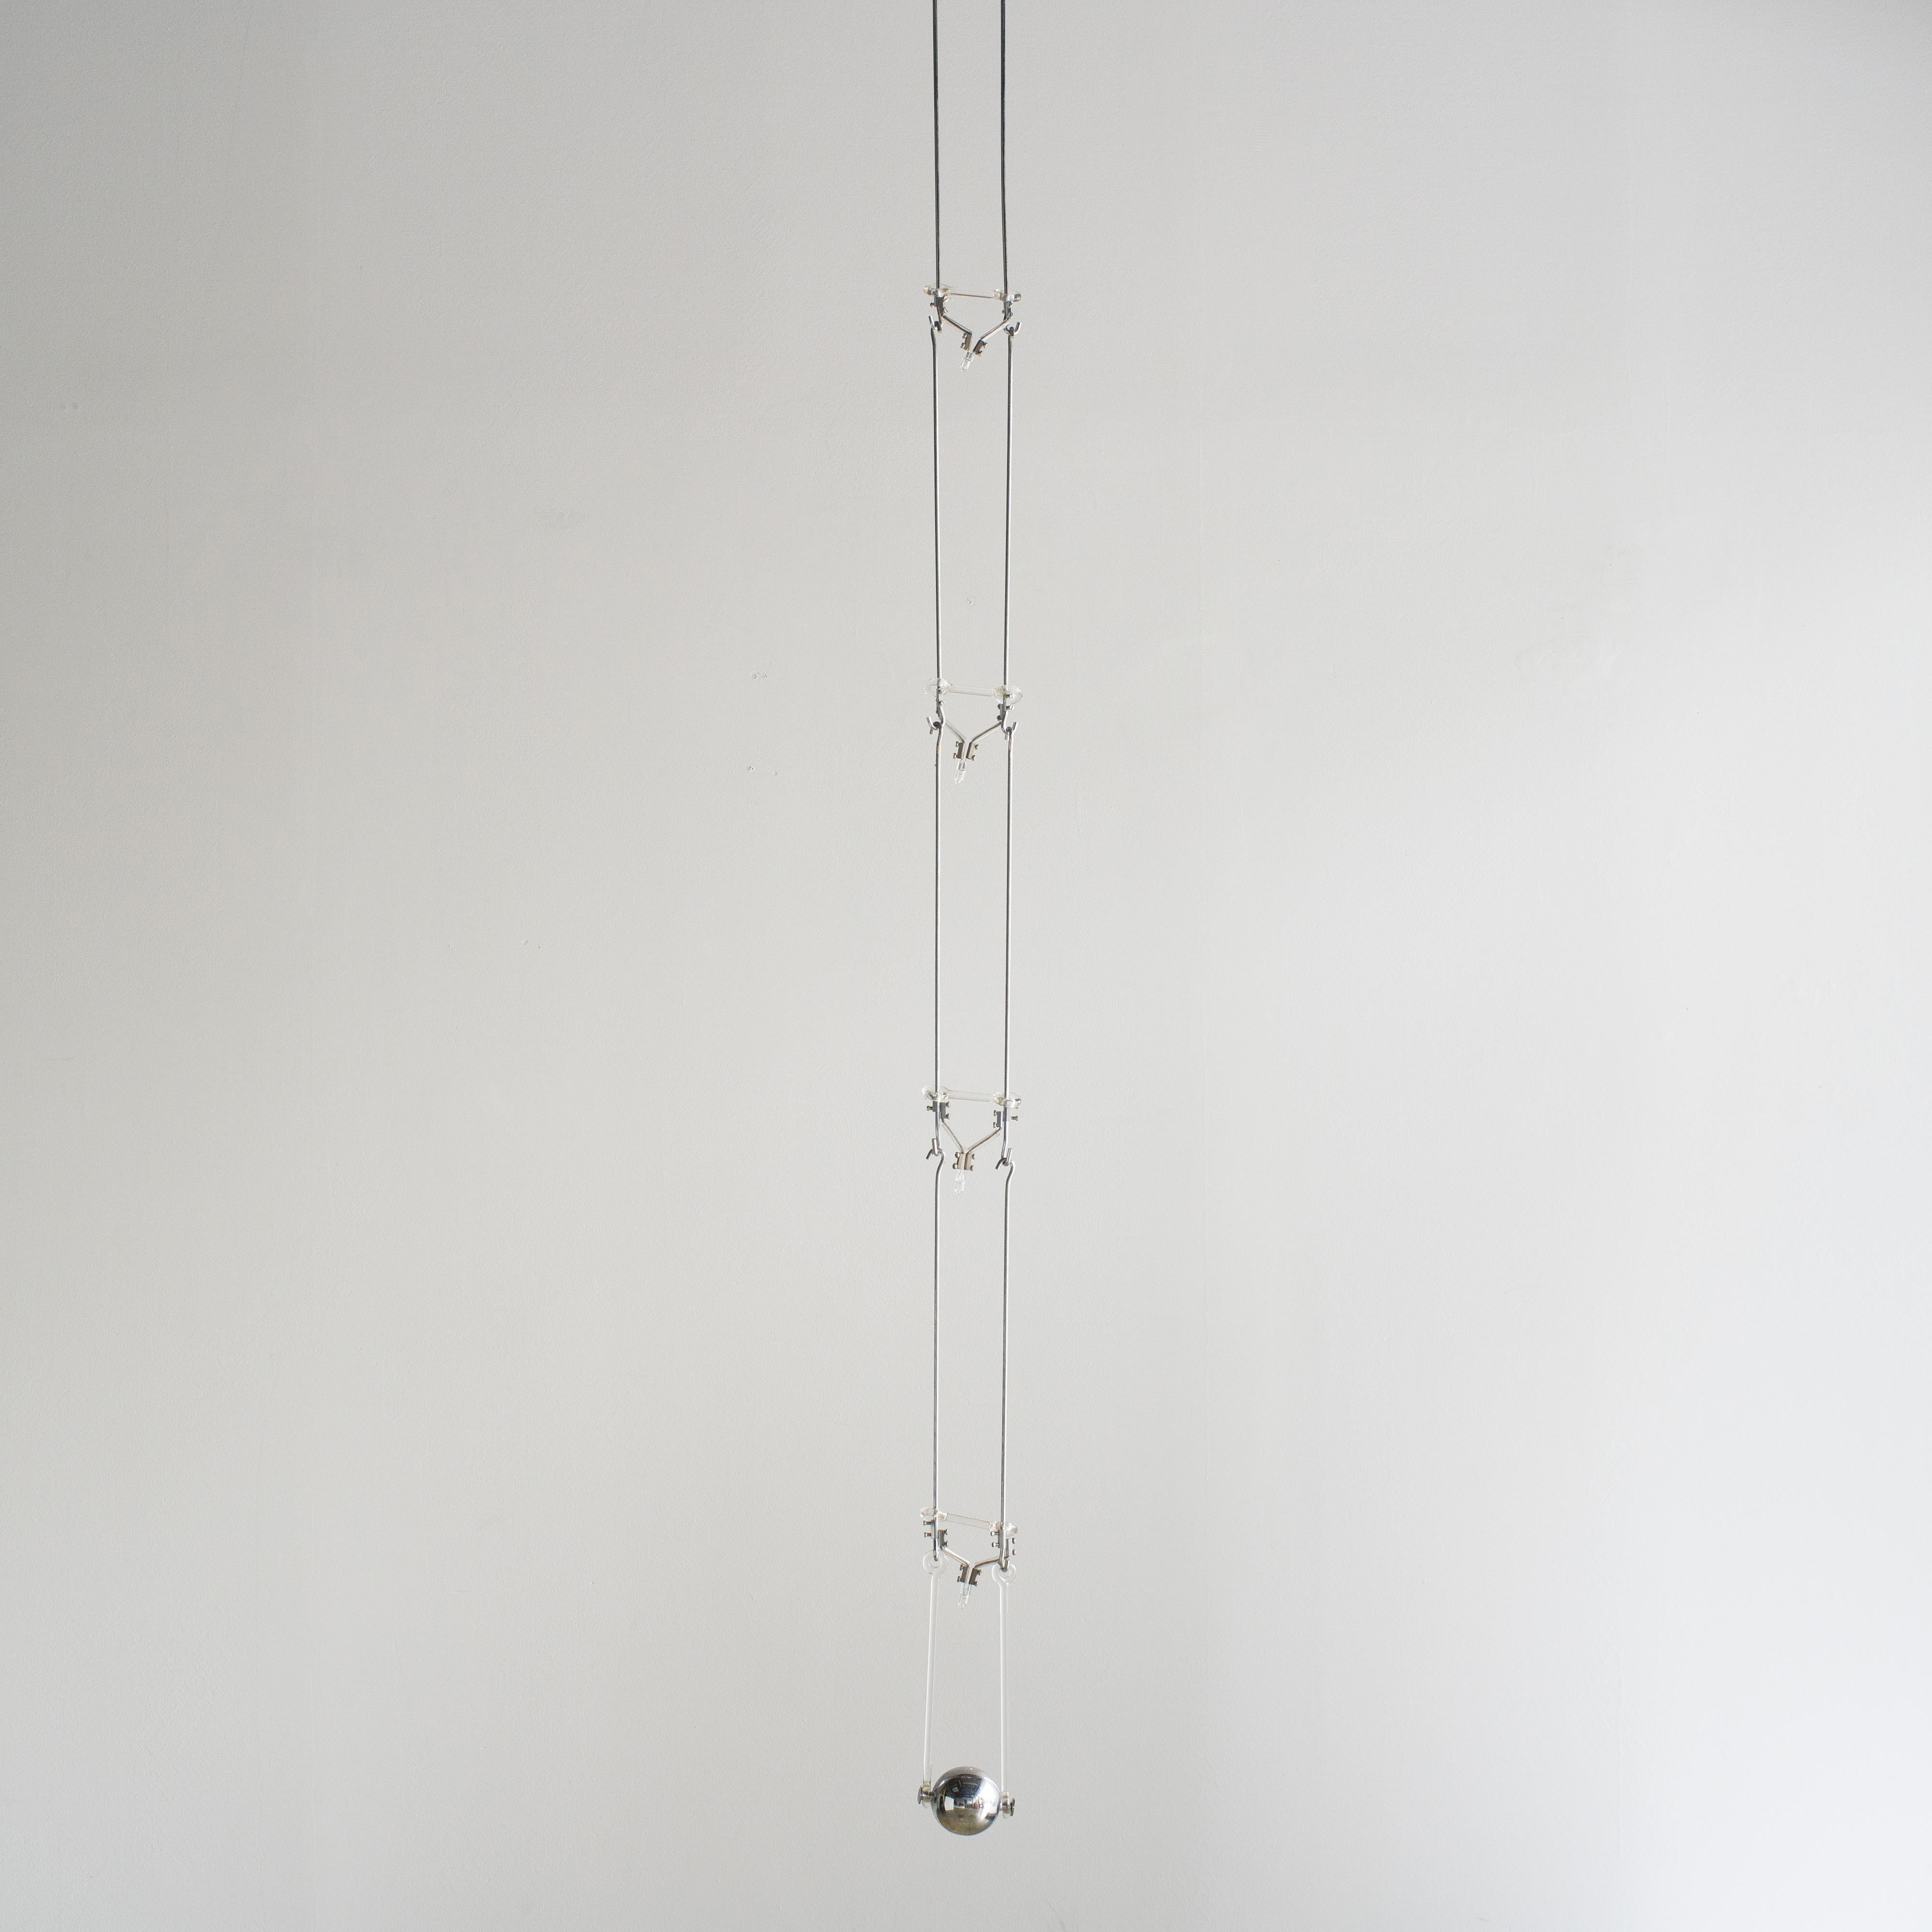 Suspension sculpturale conçue par Design-Light en 1972. Produit par Fontana Arte.  
Ce luminaire est composé d'une base, de six unités de suspension et d'un poids. Les unités de suspension sont ajoutées au crochet.  La longueur totale sera donc